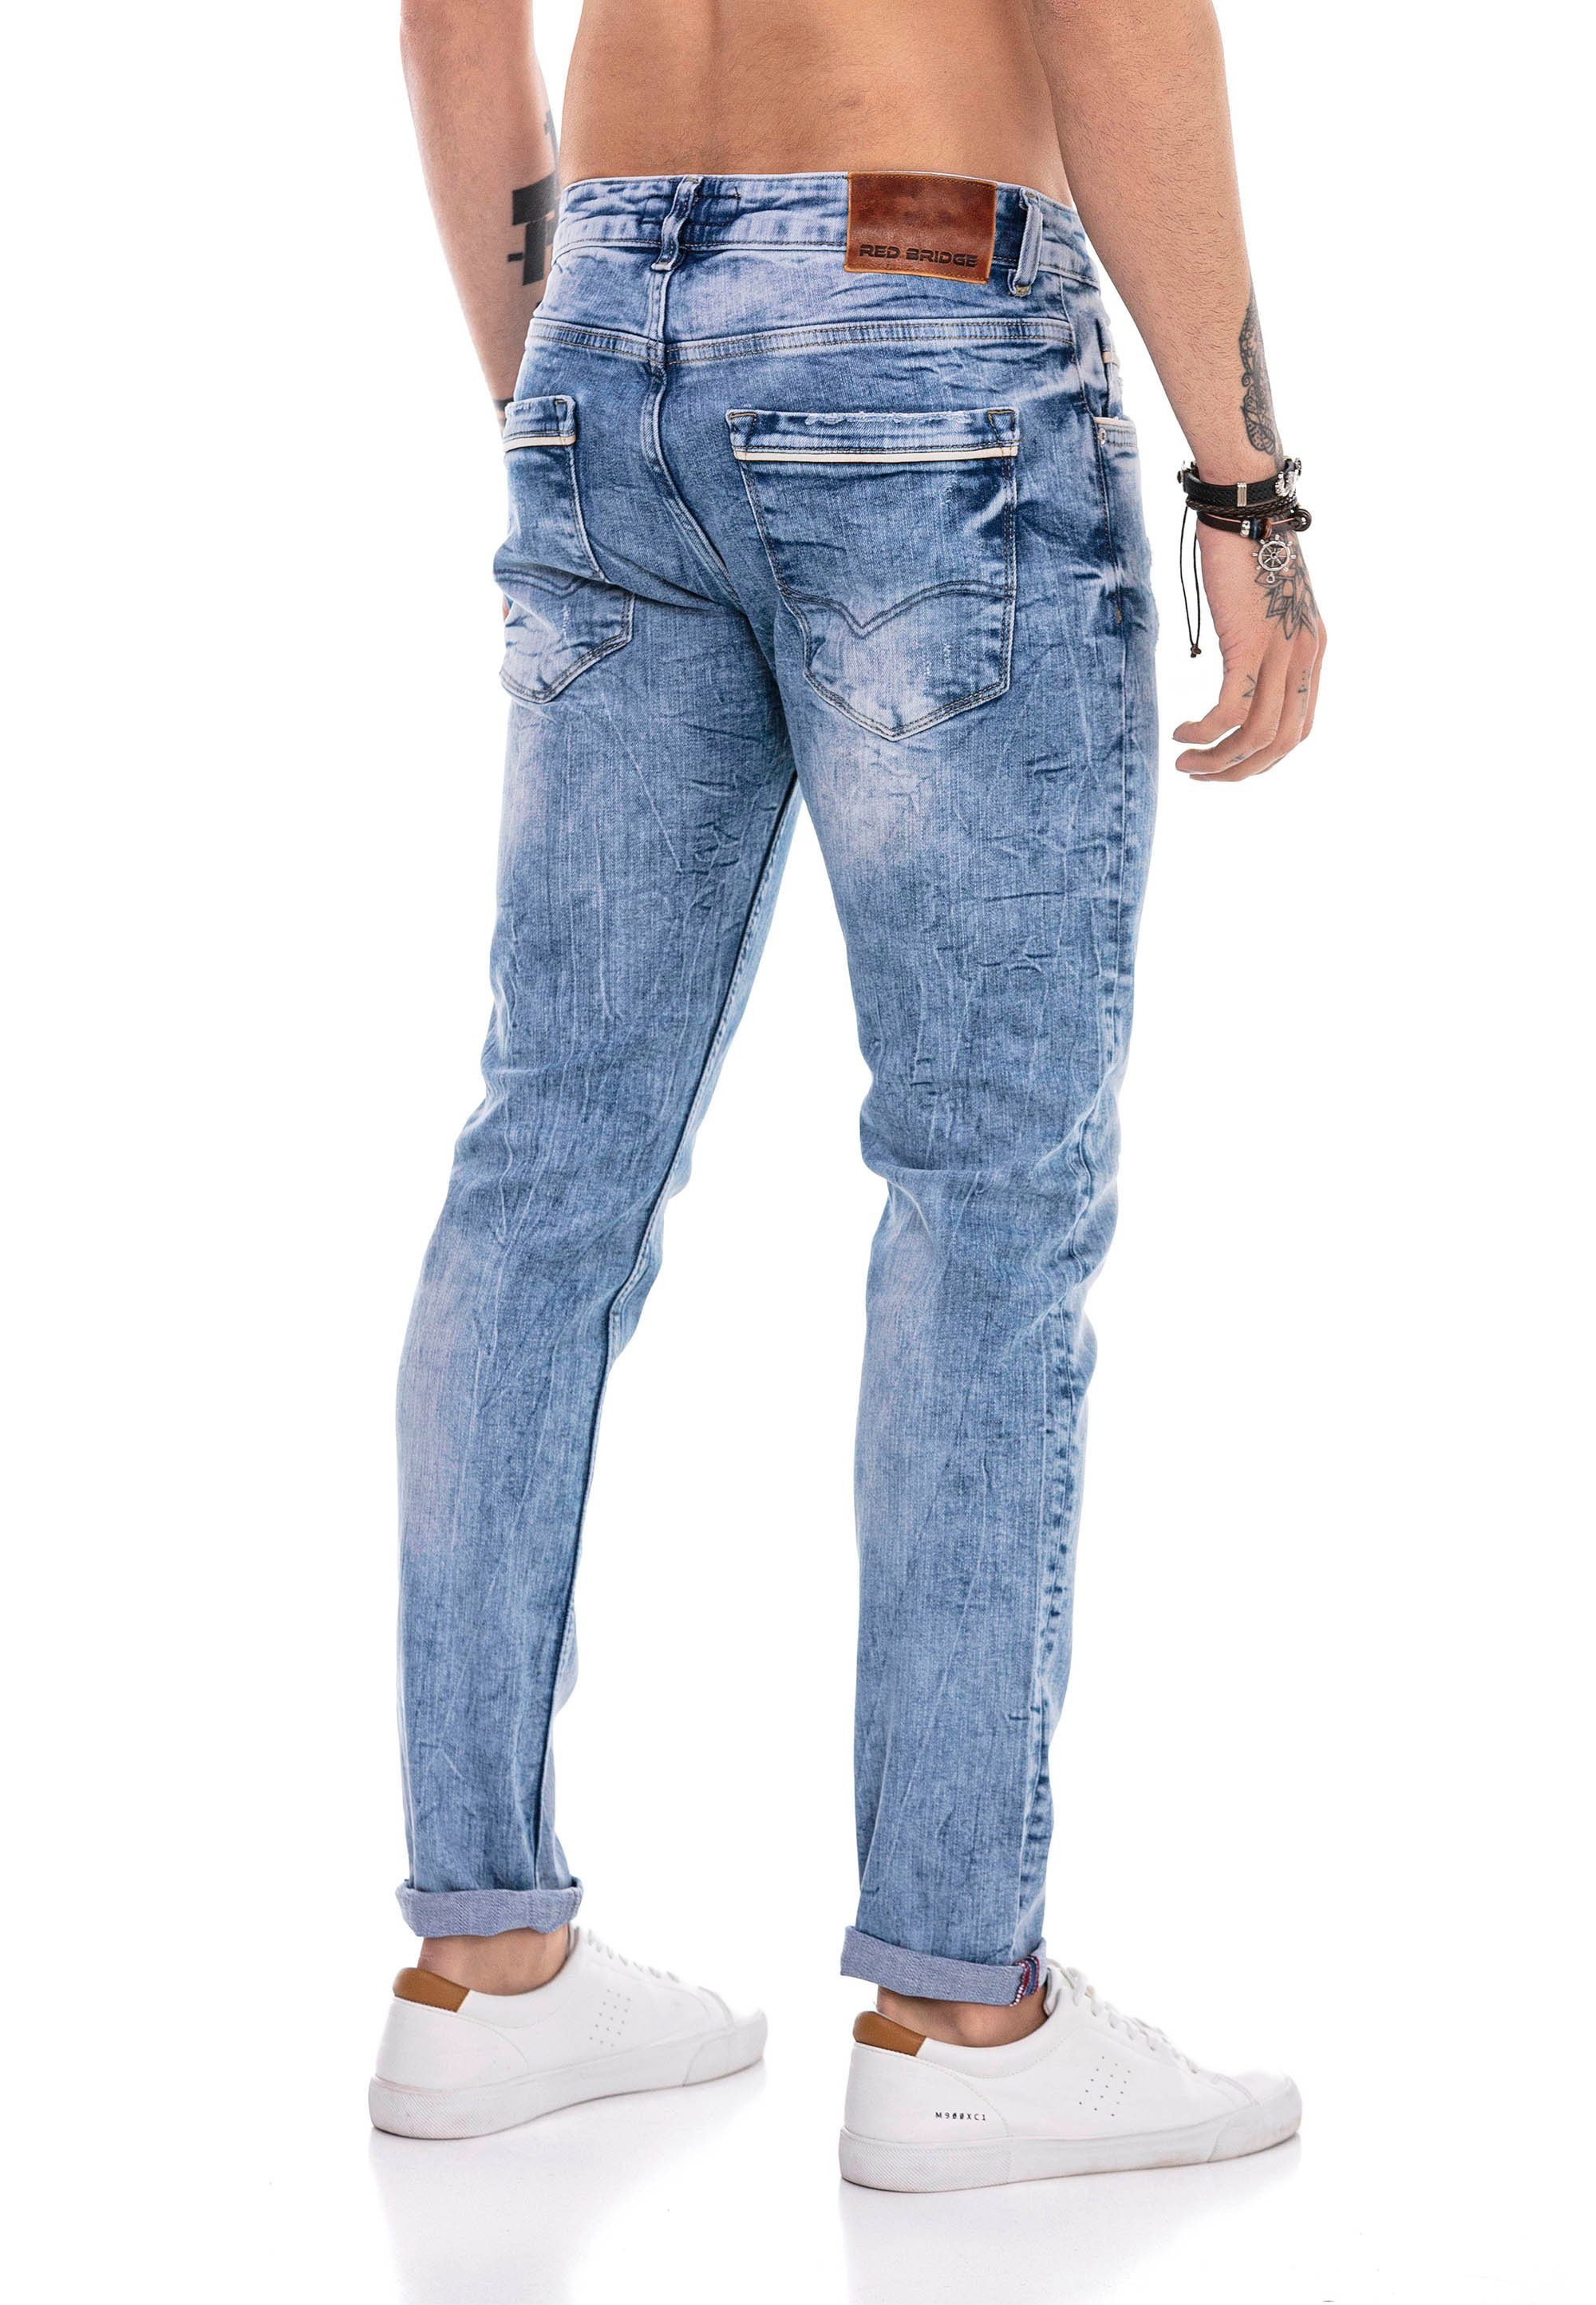 RedBridge im Sutton Bequeme Jeans klassischen Coldfield 5-Pocket-Design